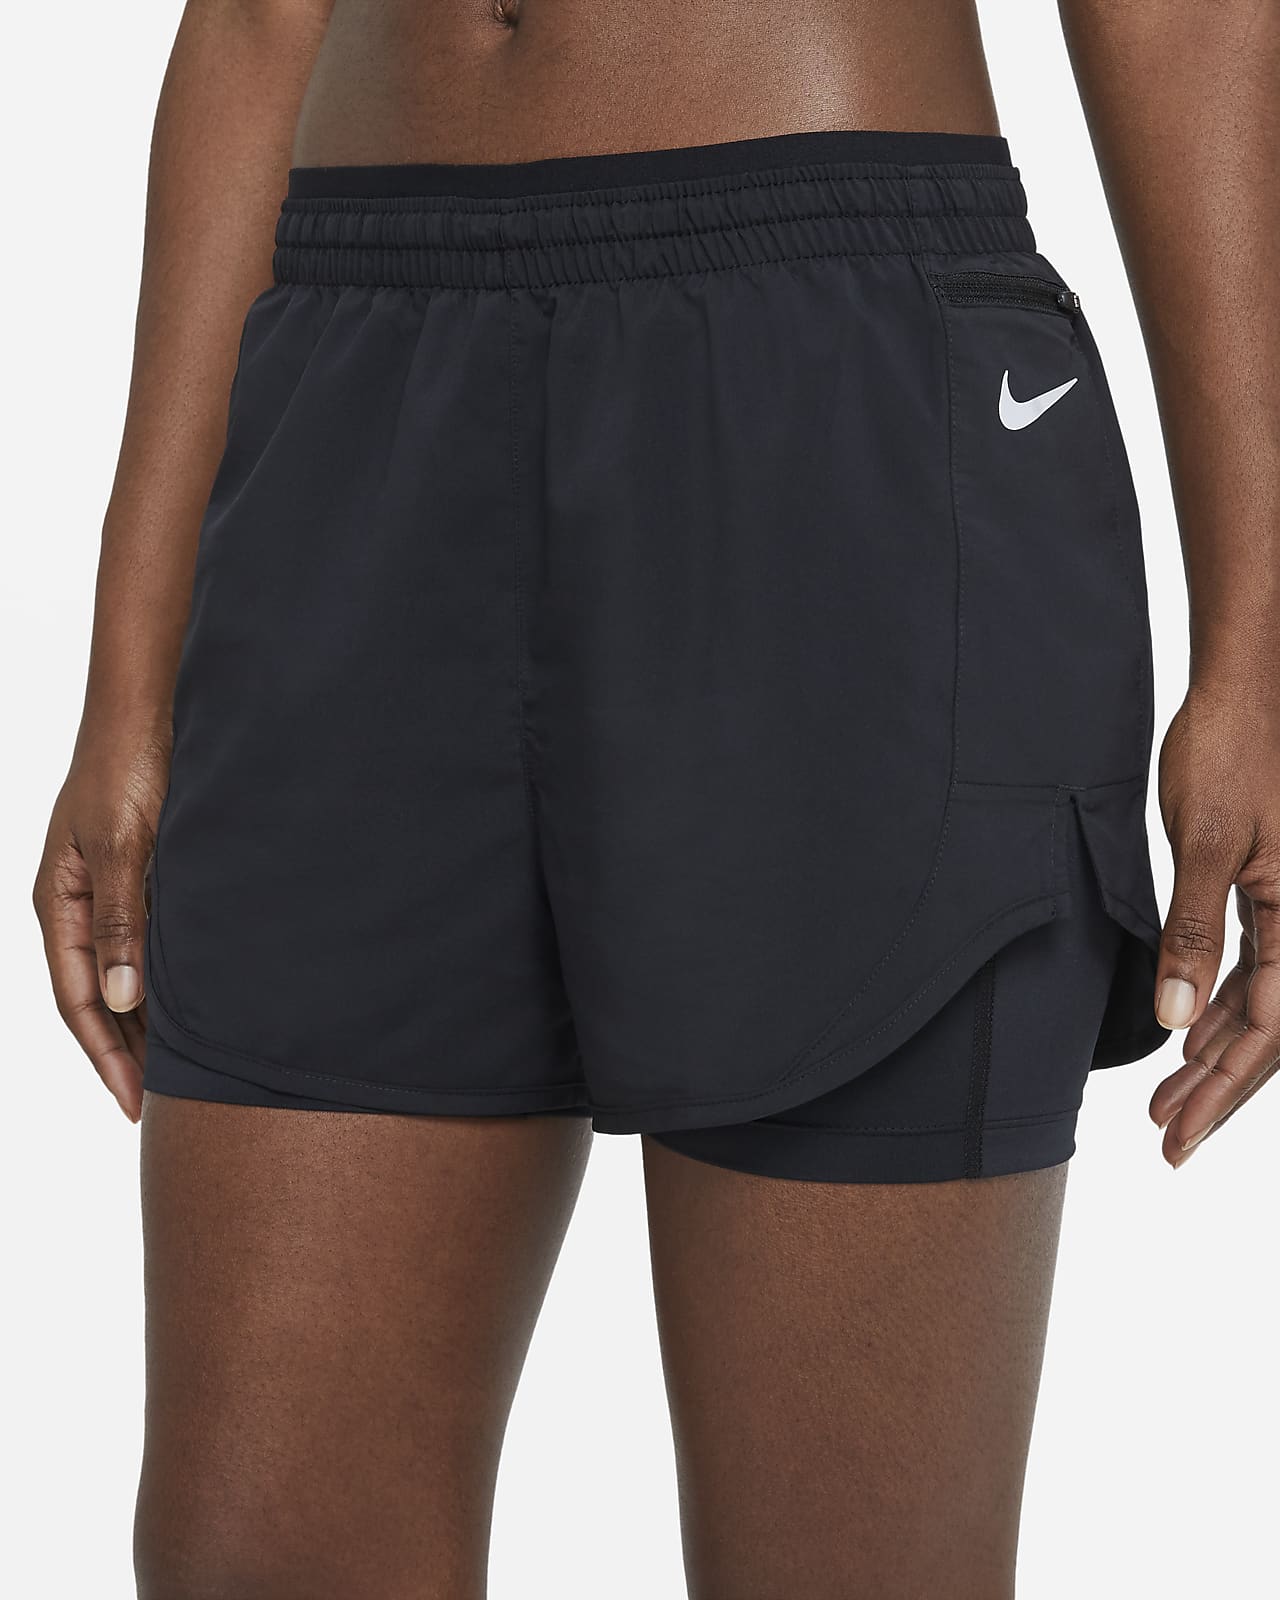 Nike Tempo Luxe Women's 2-In-1 Running Shorts. Nike LU